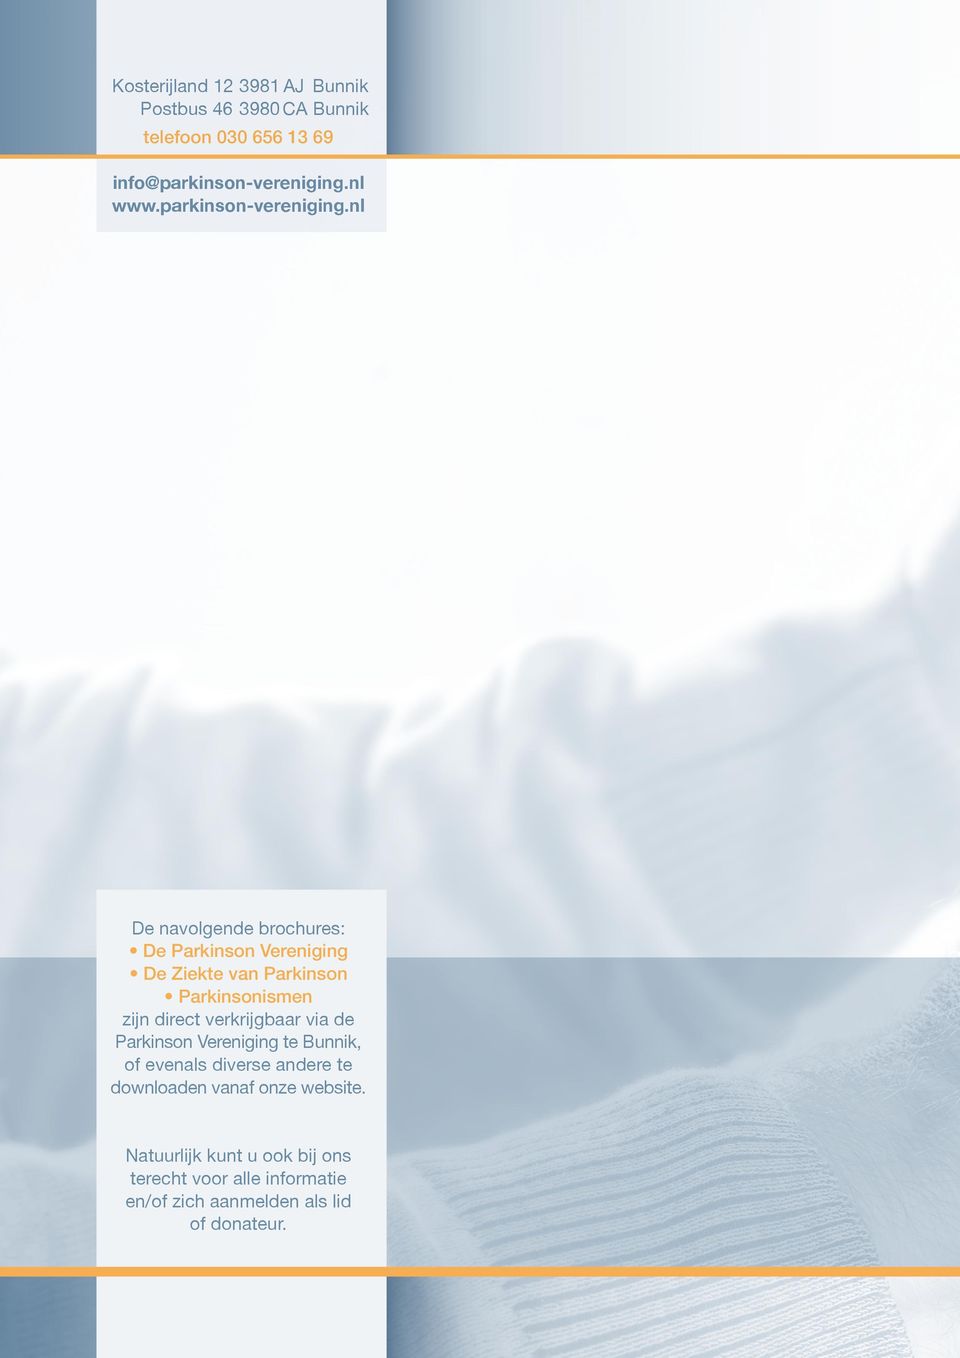 nl De navolgende brochures: De Parkinson Vereniging De Ziekte van Parkinson Parkinsonismen zijn direct